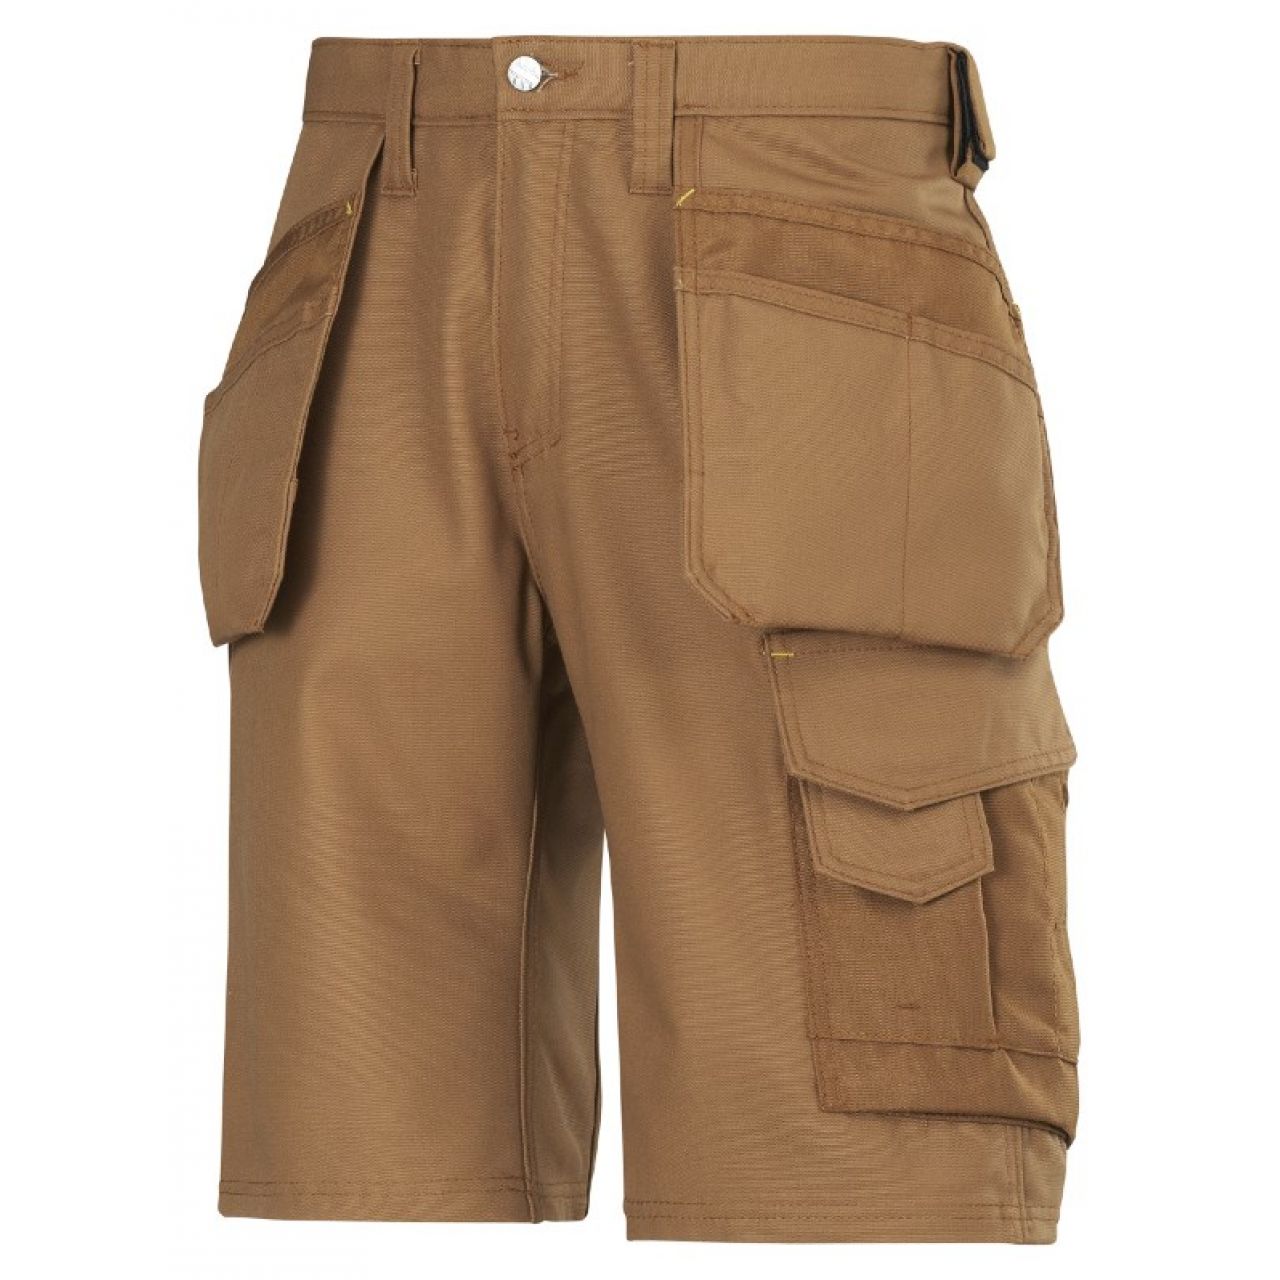 3014 Pantalones cortos de trabajo con bolsillos flotantes Canvas+ marron talla 42